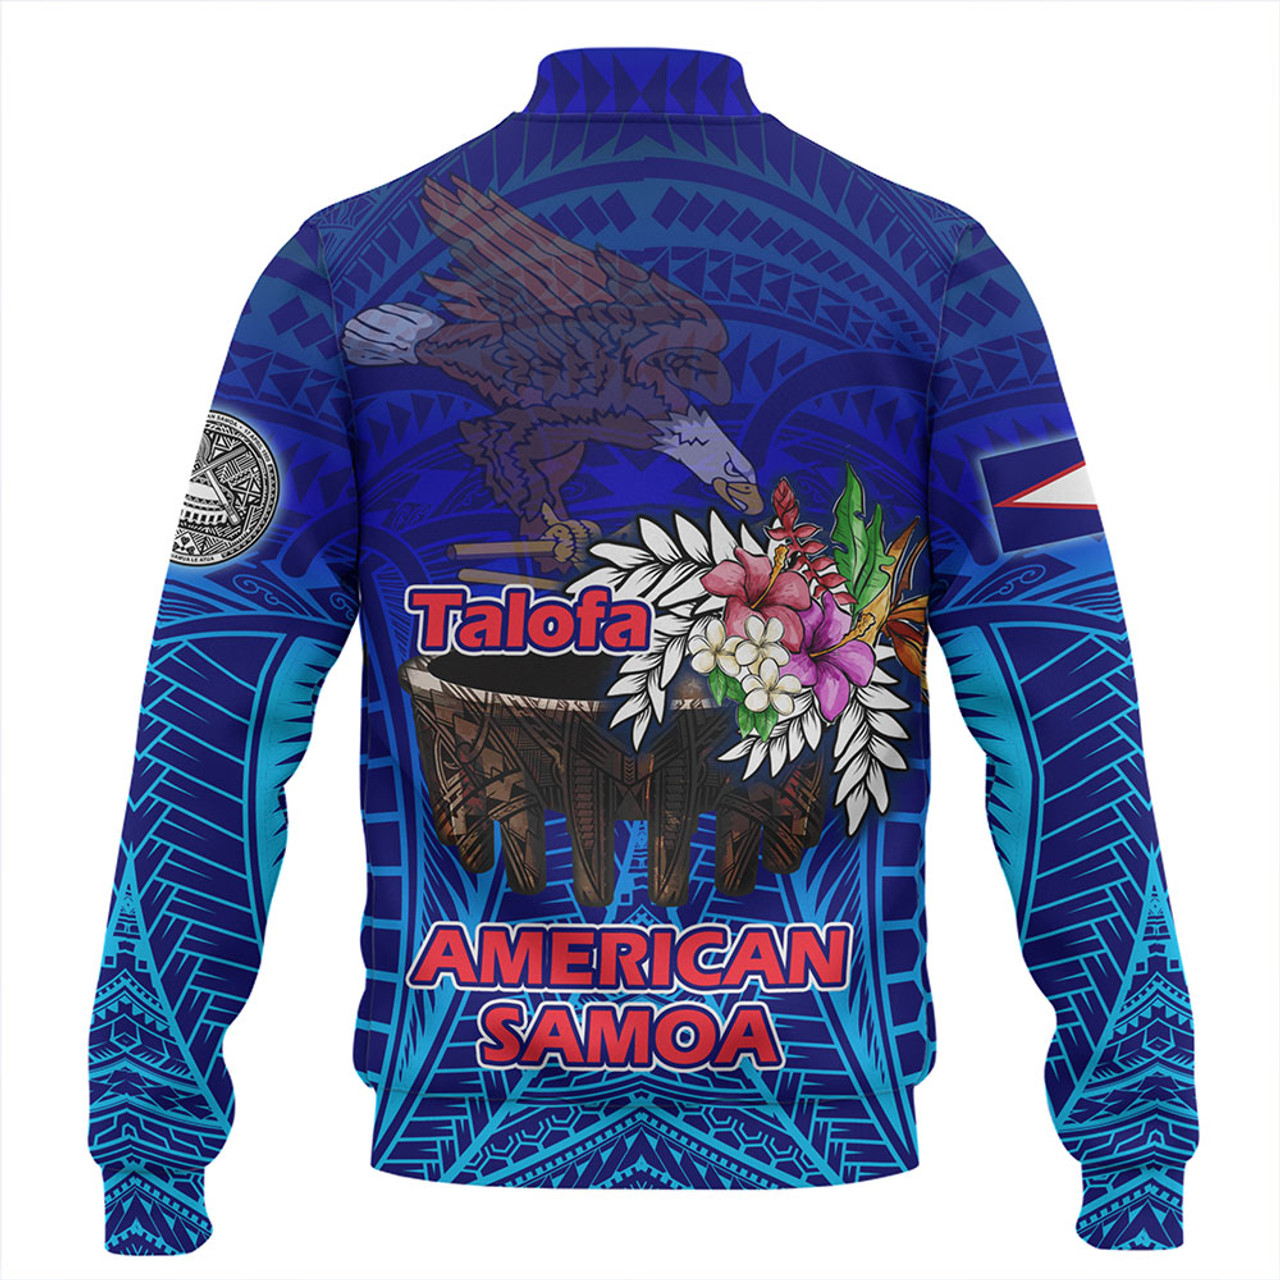 American Samoa Baseball Jacket Talofa American Samoa Kava Bowl